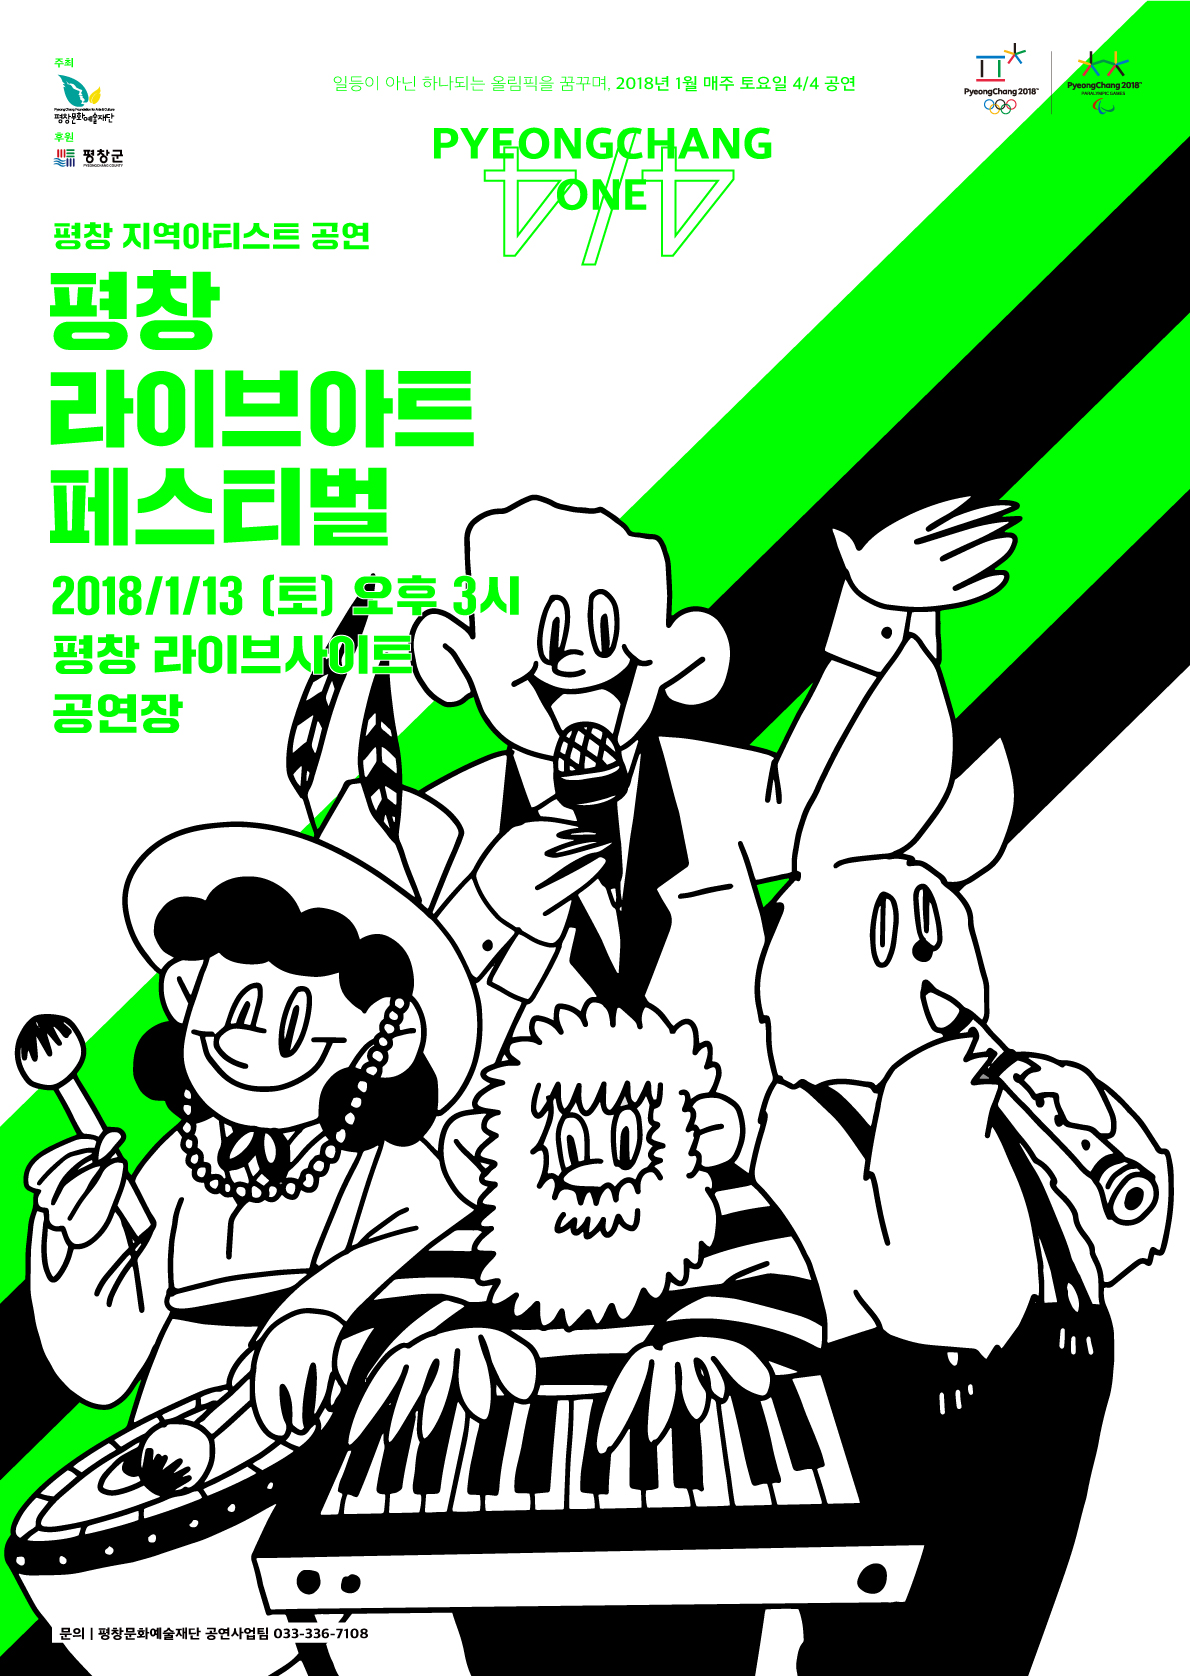 2018평창동계올림픽 성공개최 기원 기획공연 시리즈 <평창One> 이미지